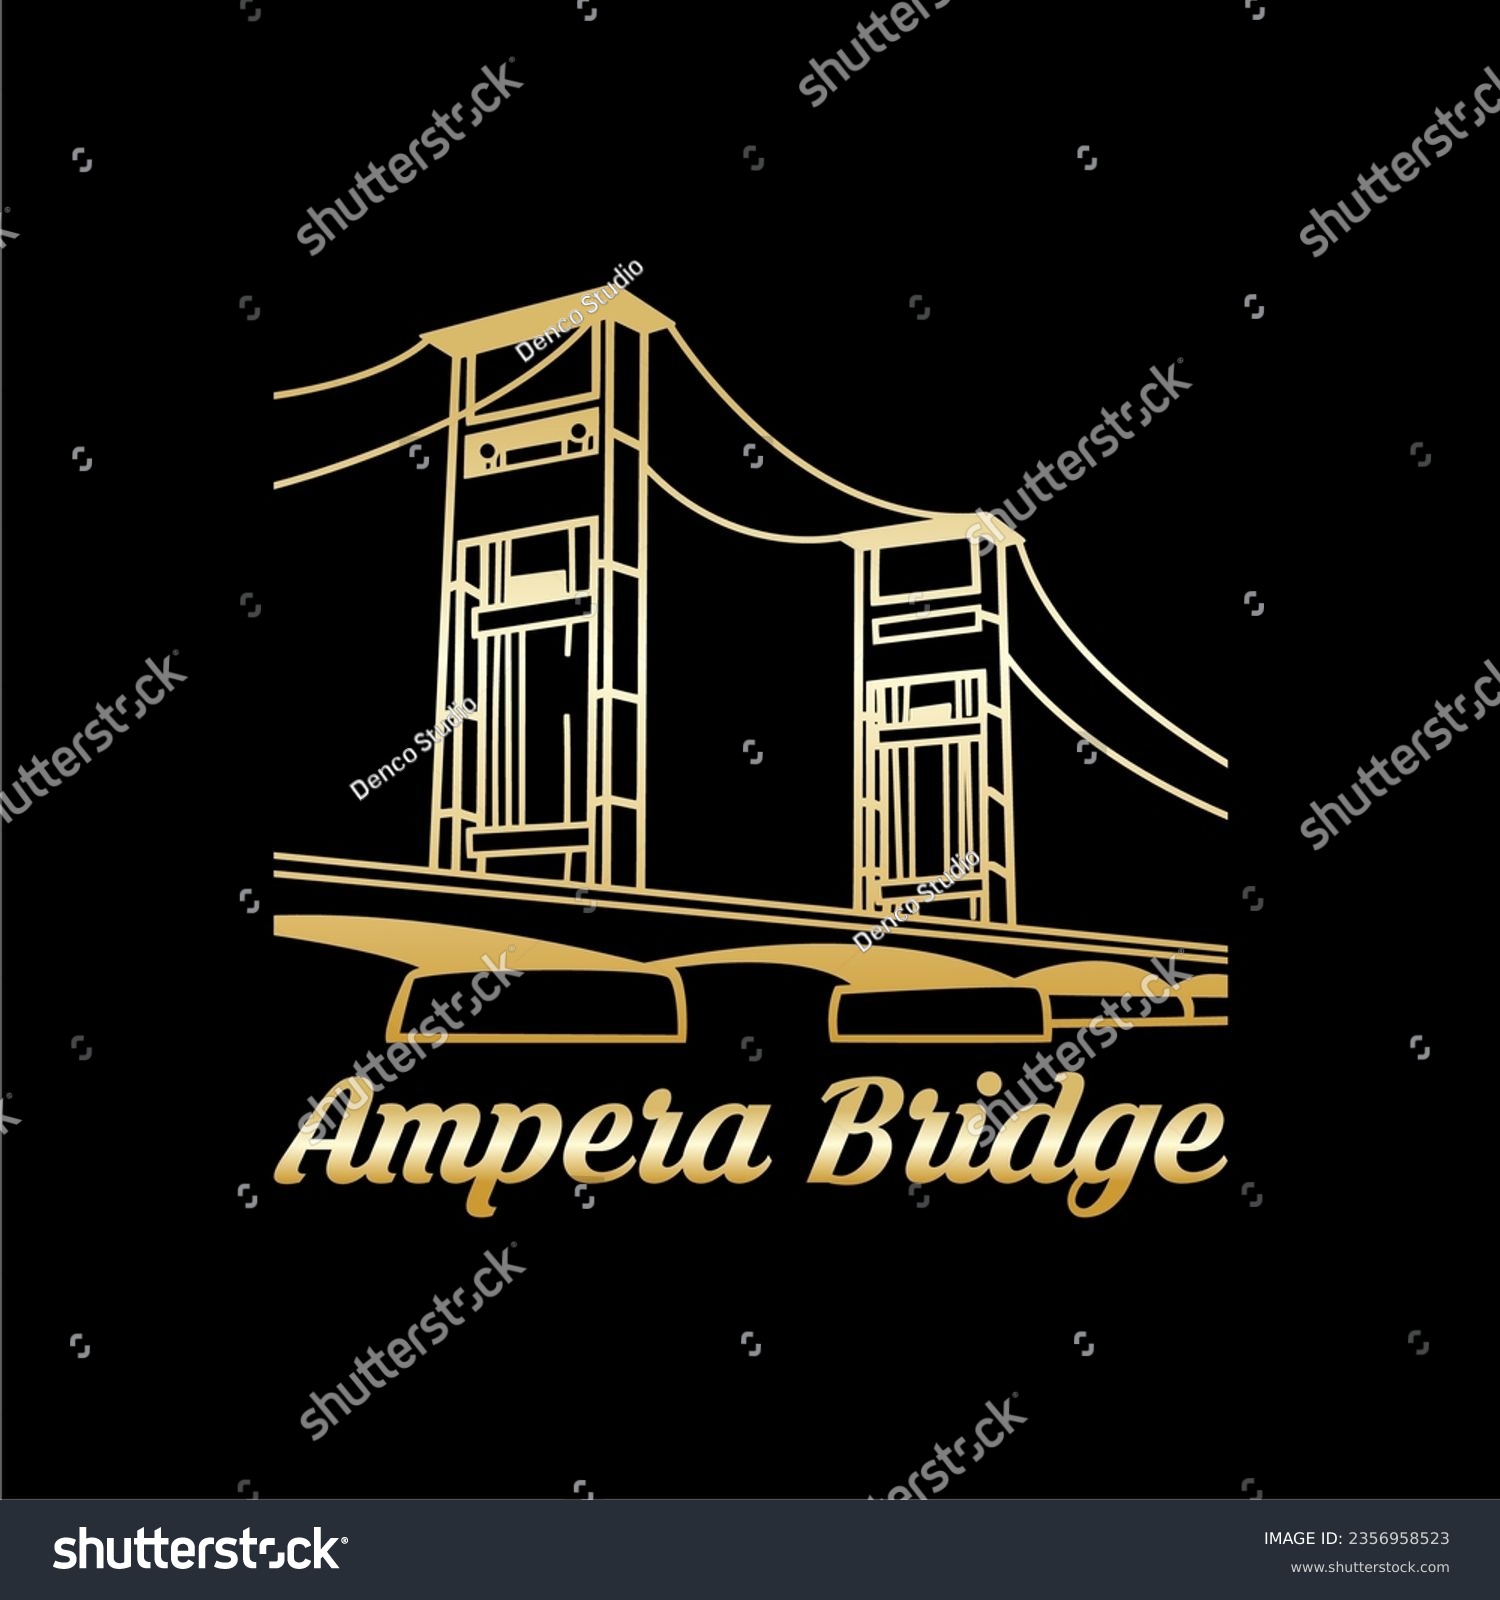 SVG of Ampera Bridge Logo Palembang City, Indonesia.
Vector symbol illustration design
vintage buildings svg